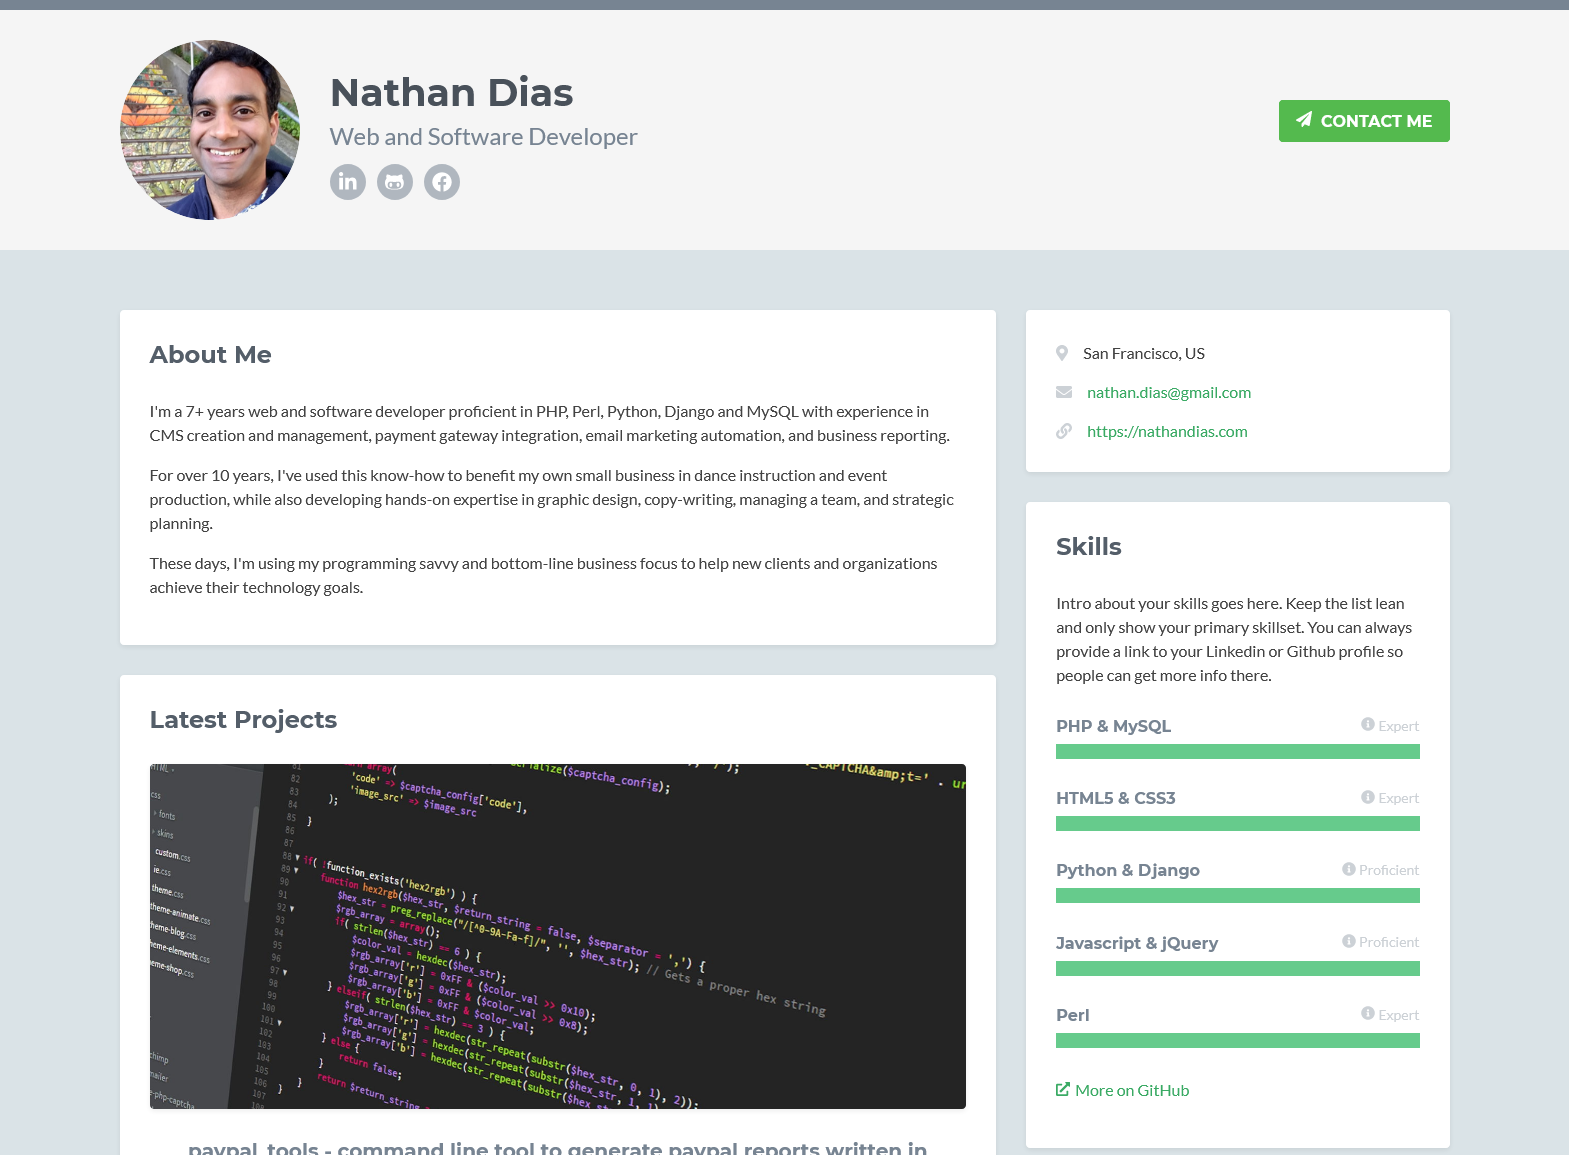 NathanDias.com - Web and Software Developer Portfolio